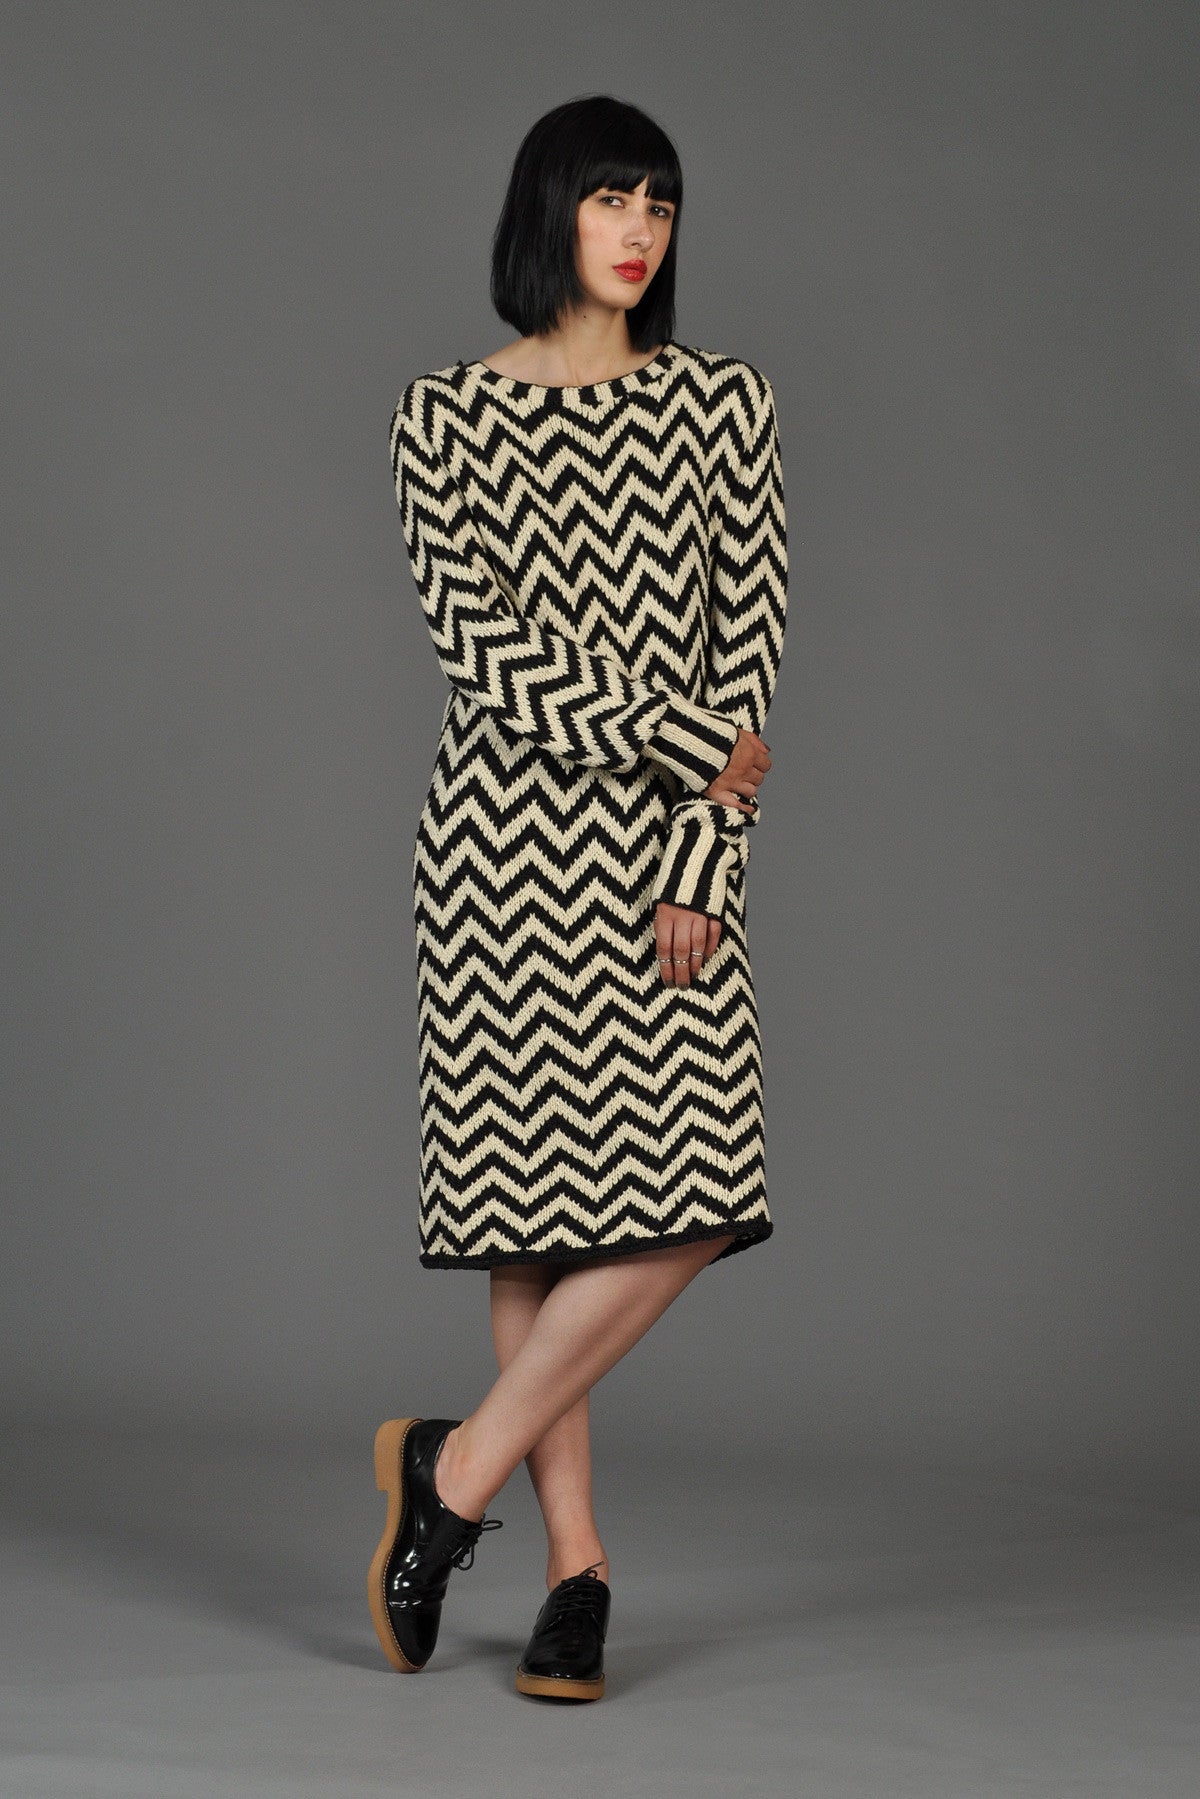 Black + White Chevron Stripe Knit Silk Sweater Dress